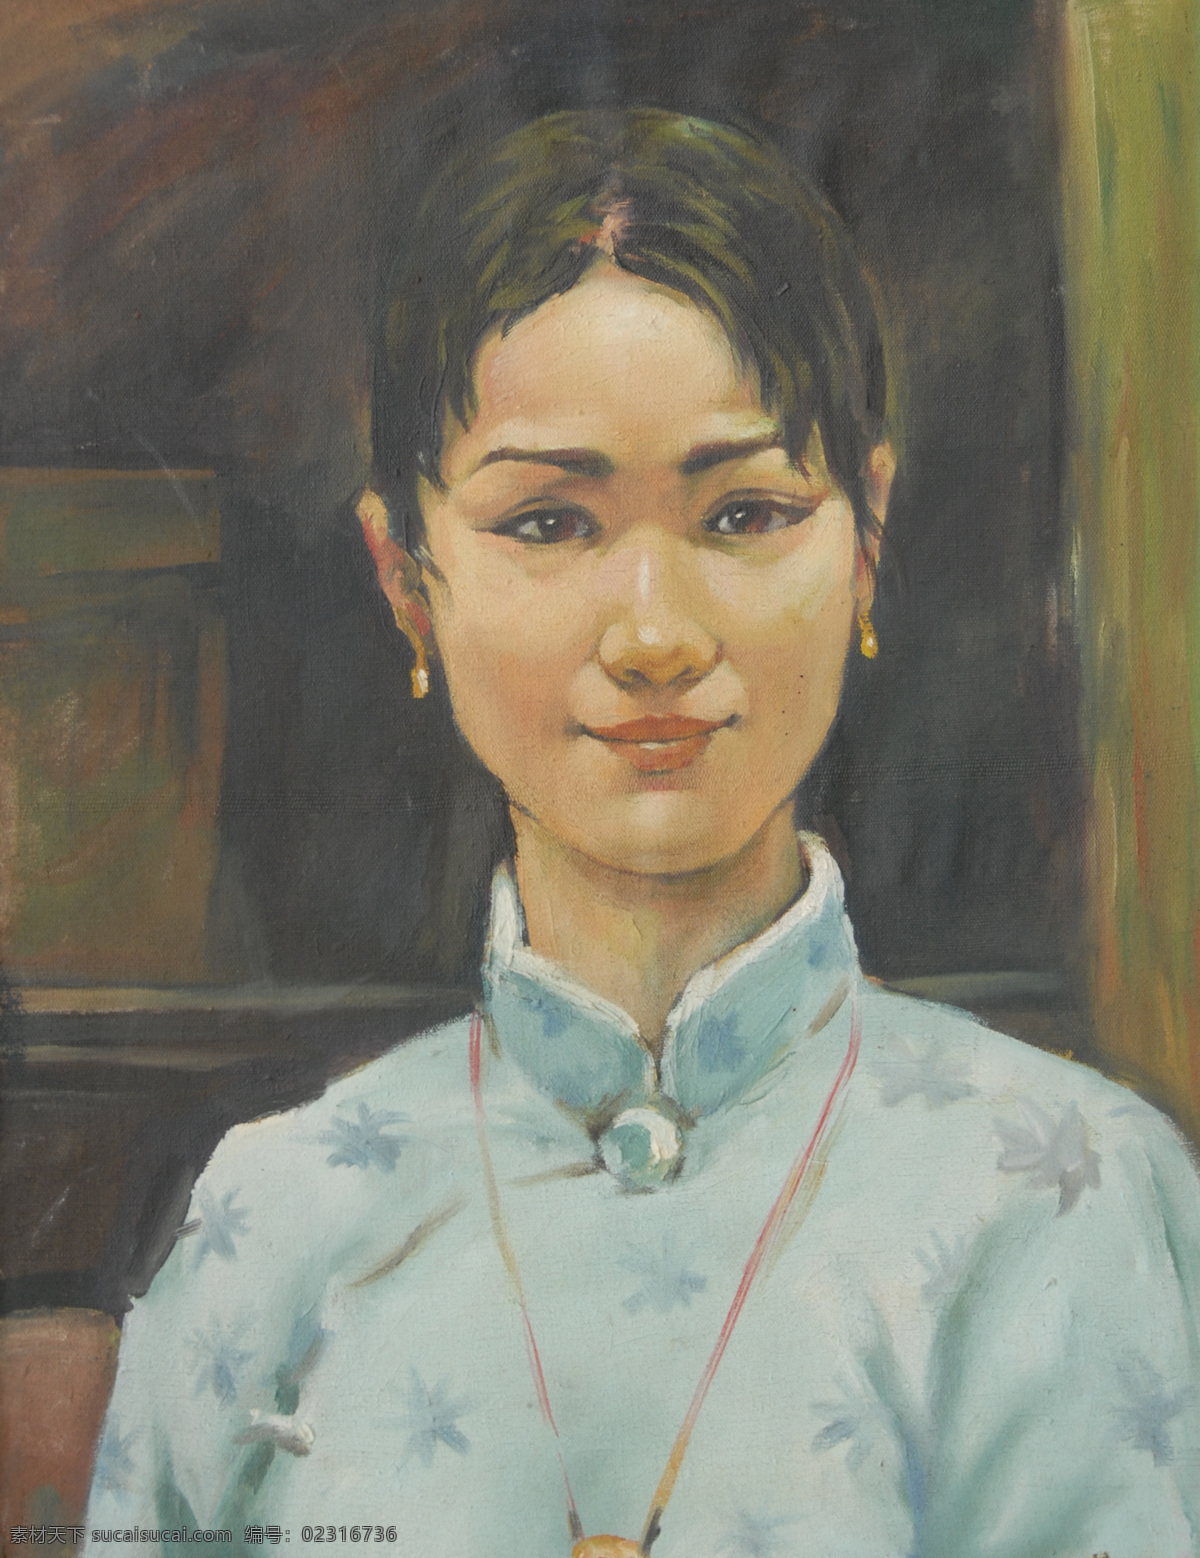 安静 绘画 绘画书法 人物 人物头像 人物肖像 峰祎 油画 头像 唯美 写实 中国 写实主义 文化艺术 分辨率 颜色模式 家居装饰素材